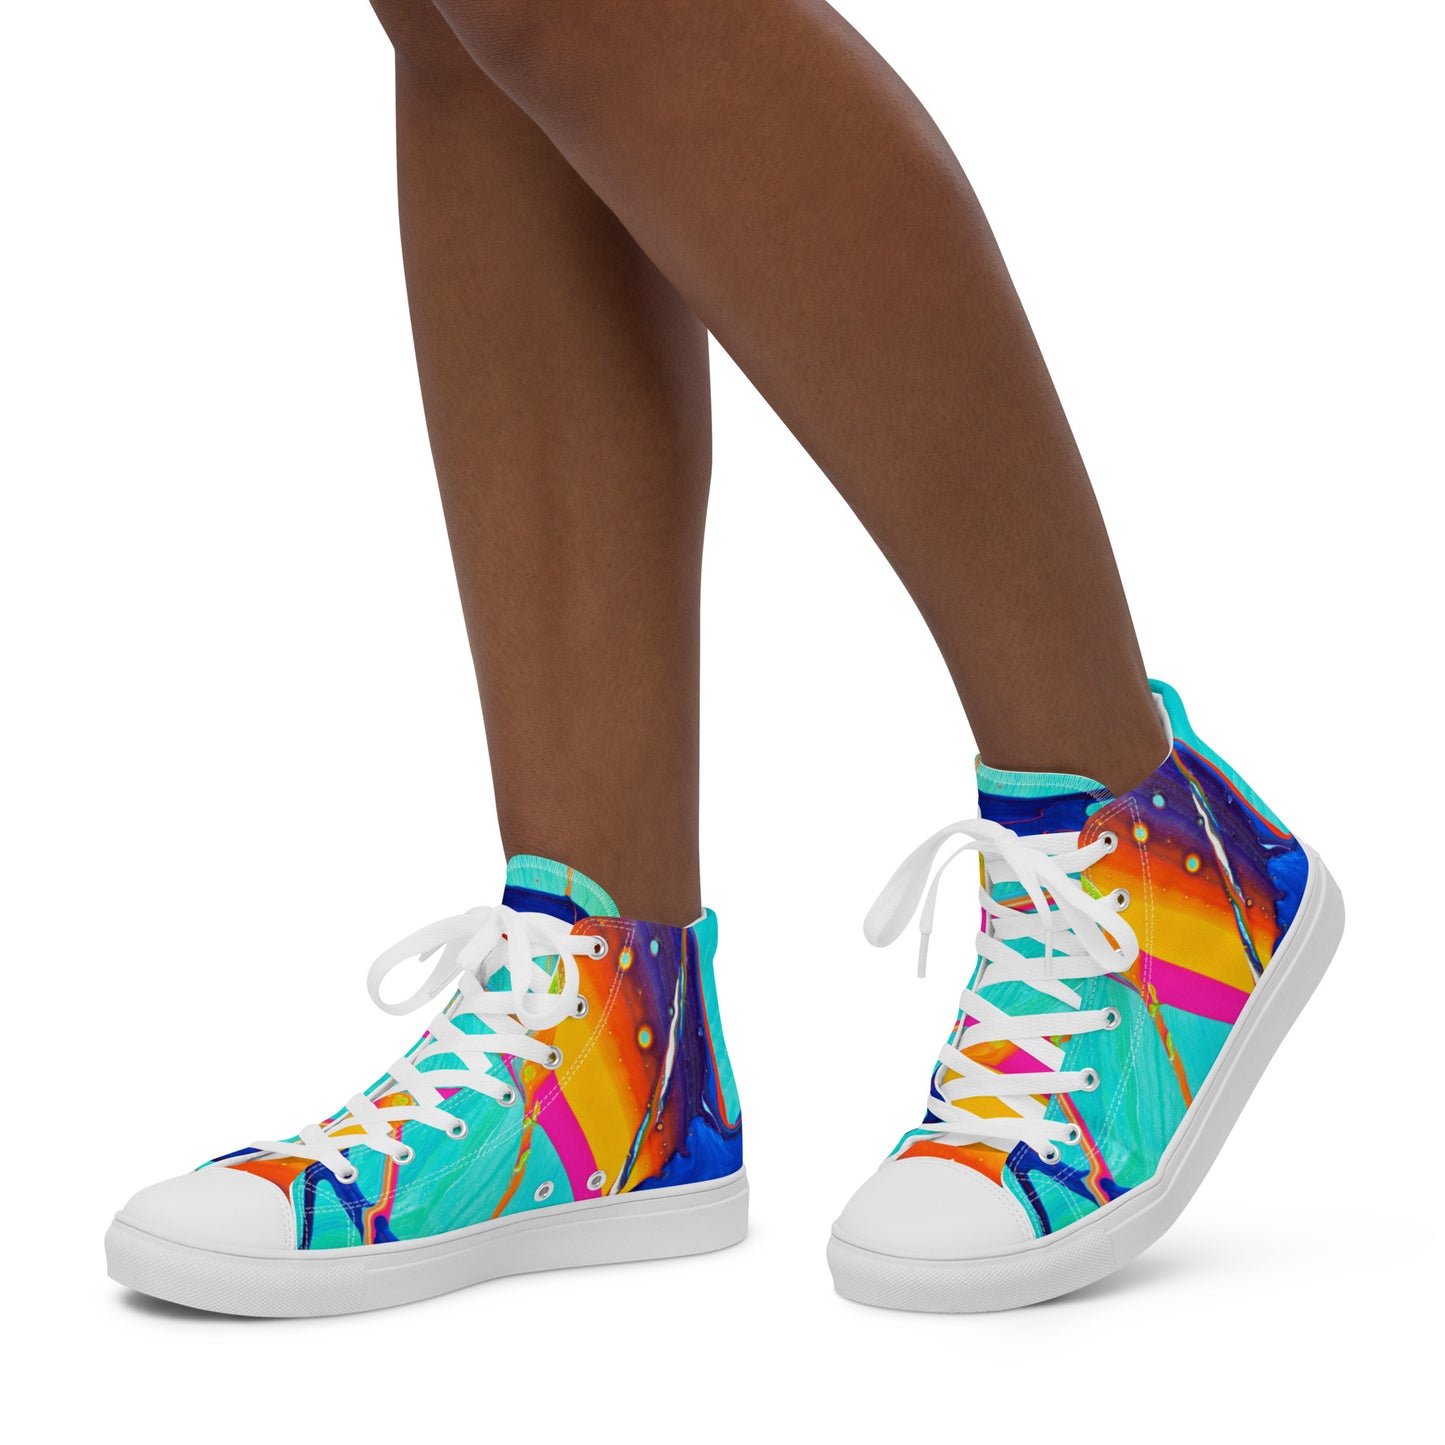 Sapatos cano alto de lona para mulher - design arco-íris